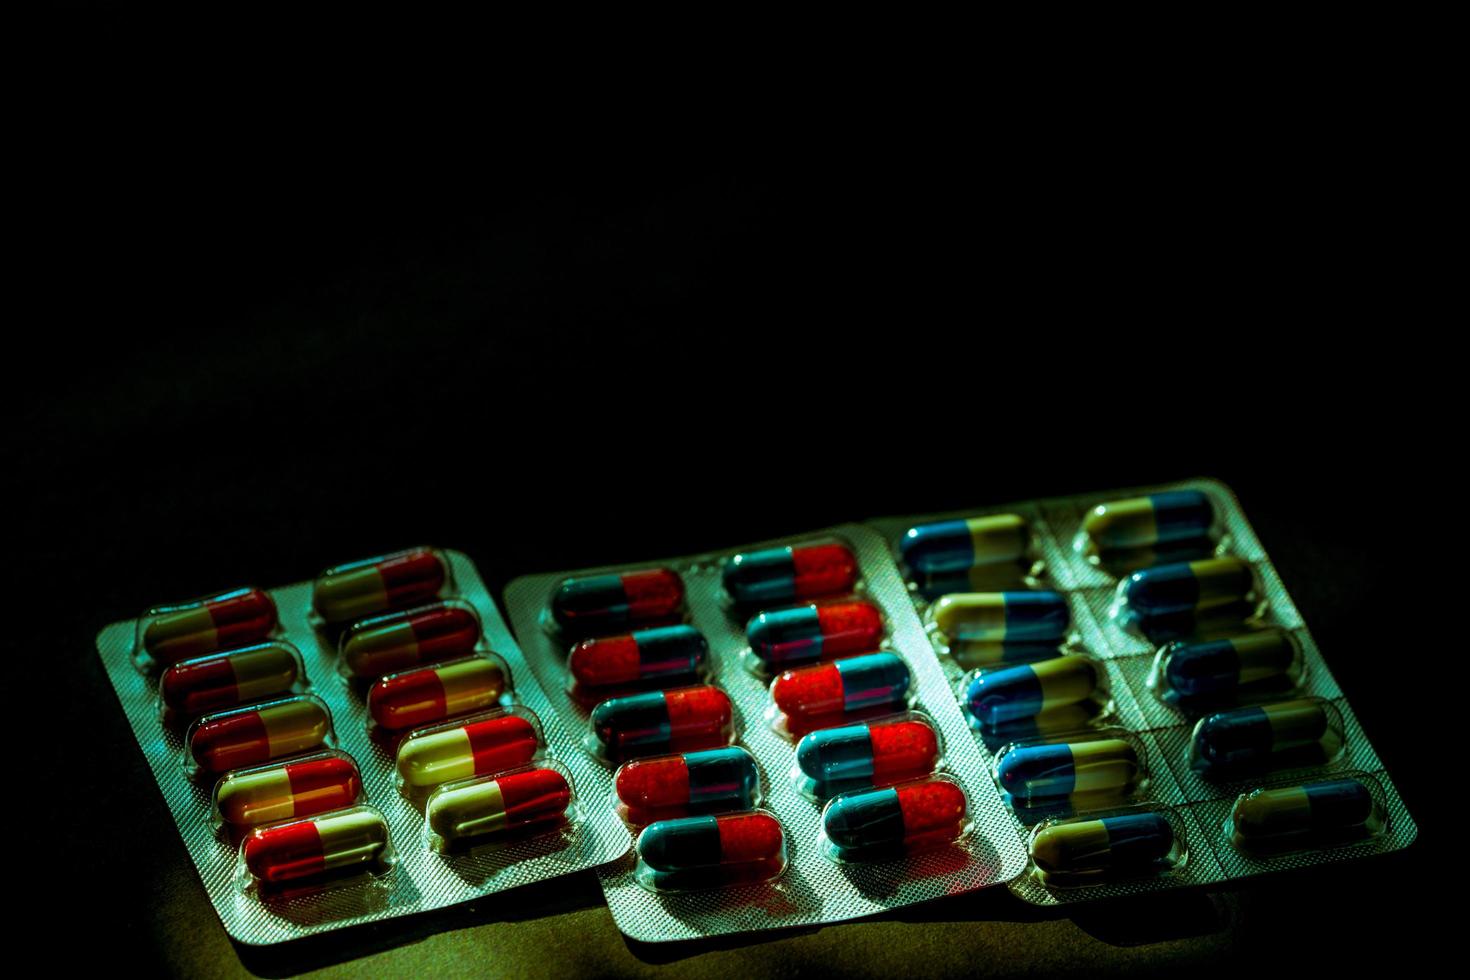 färgglada antibiotika kapsel piller i blisterförpackning på mörk bakgrund med kopia utrymme. medicin för infektioner sjukdom. antibiotikadroganvändning med rimliga. läkemedelsresistens och hälsokoncept. foto